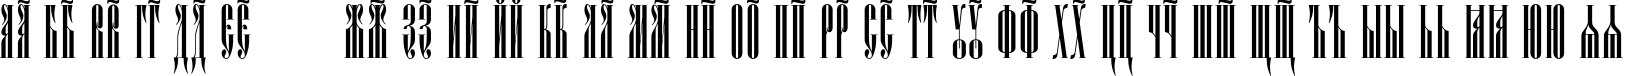 Пример написания русского алфавита шрифтом Psaltyr